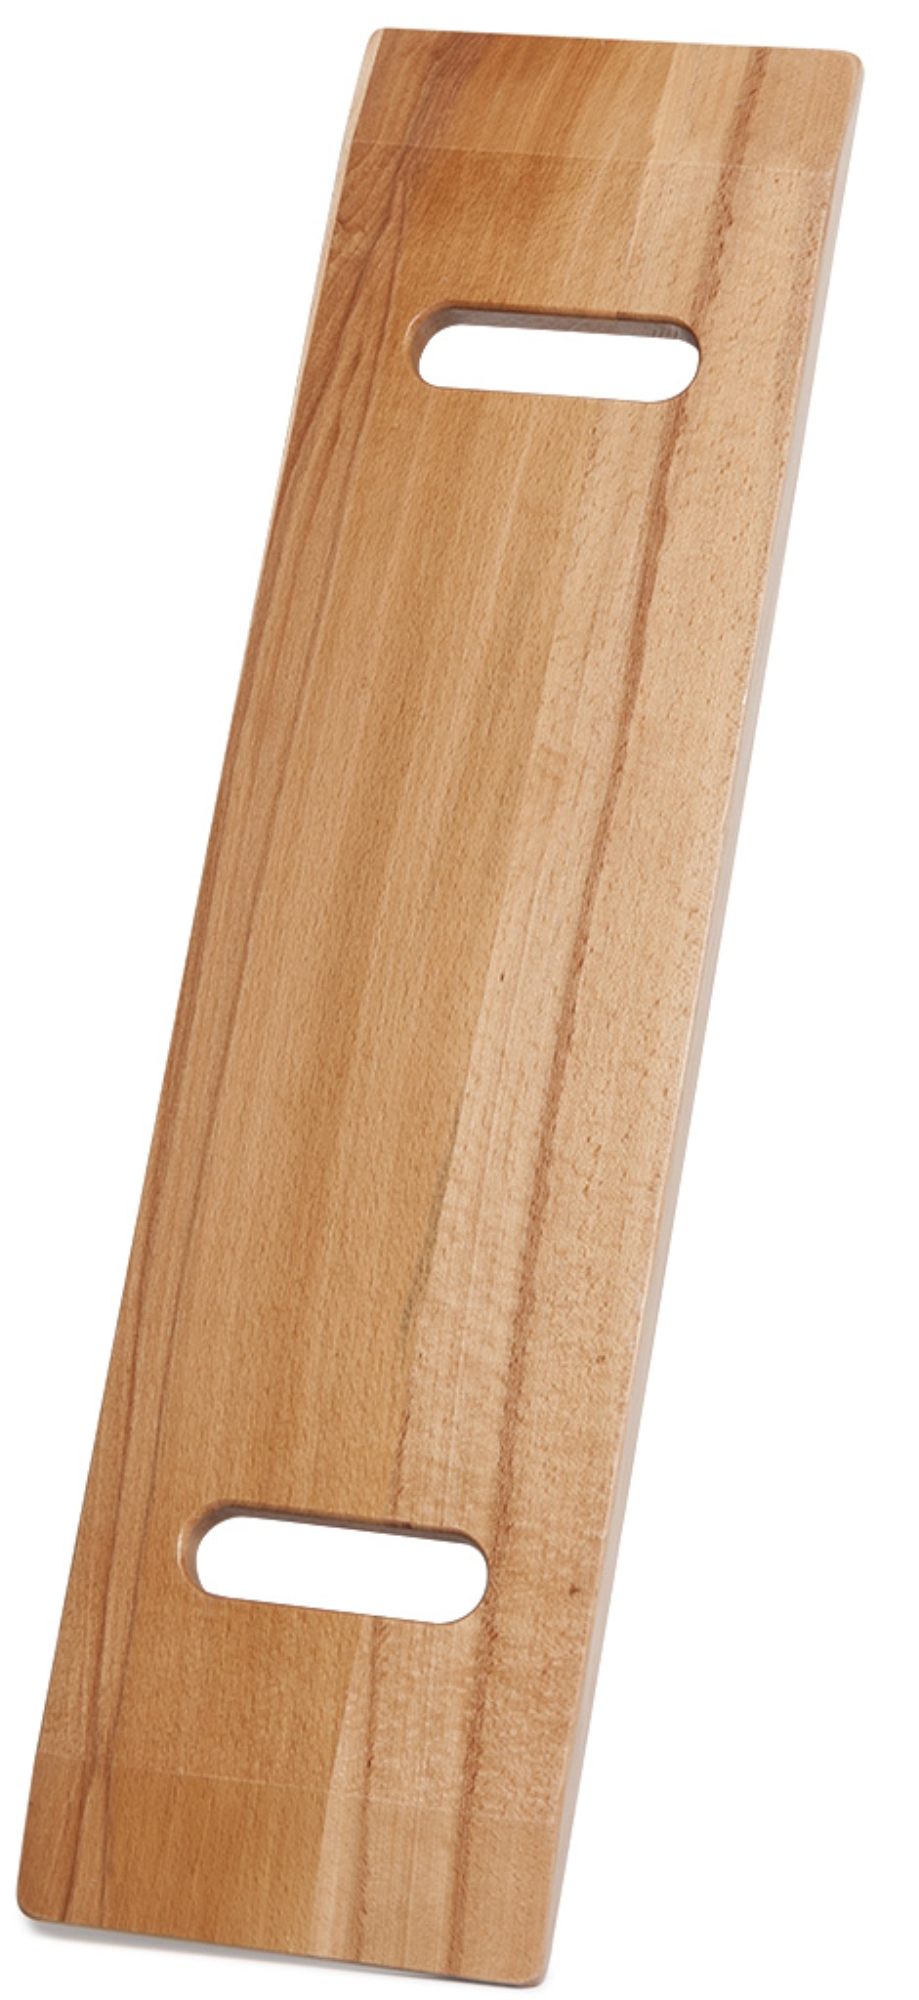 Hausmann 5085 Bariatric Wood Transfer Board